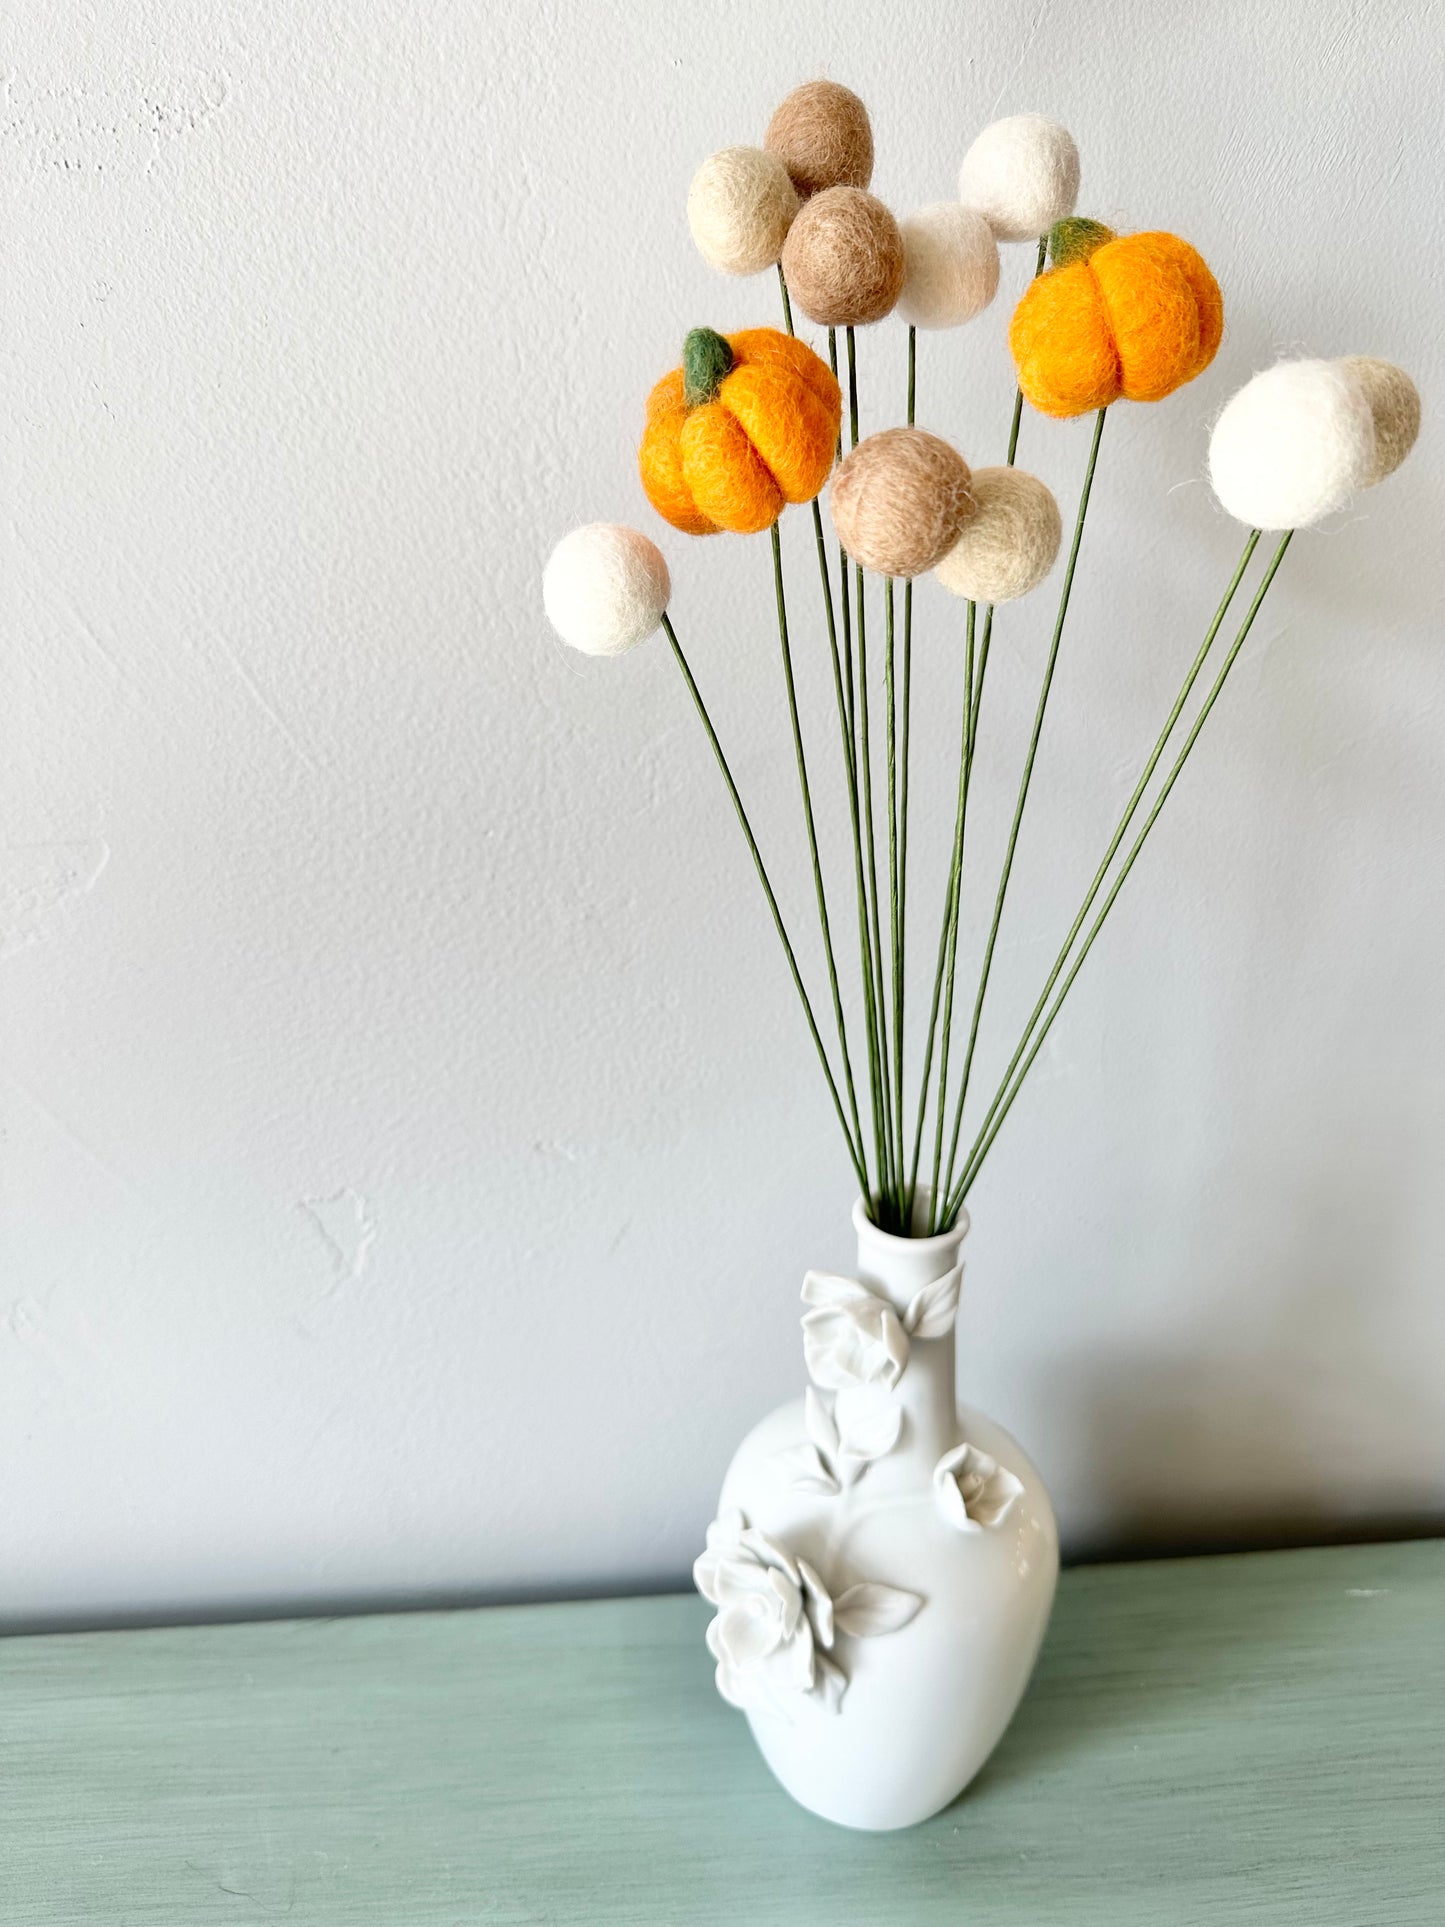 Light Pumpkin & Felt Ball Bouquet